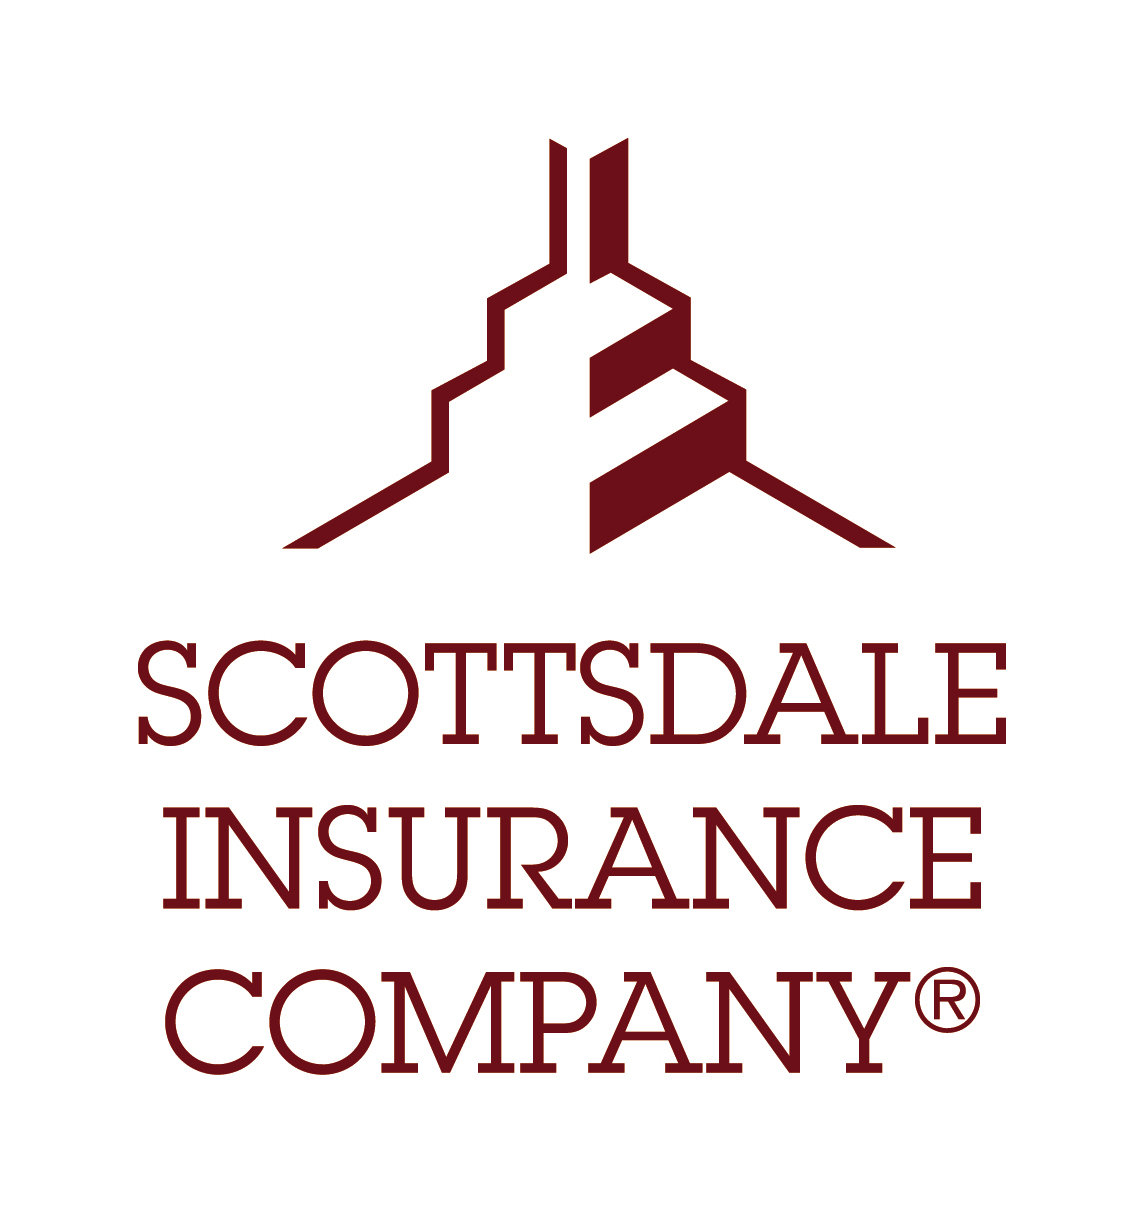 //www.christiancharlesinsurance.com/wp-content/uploads/2015/11/Scottsdale-Insurance.jpg